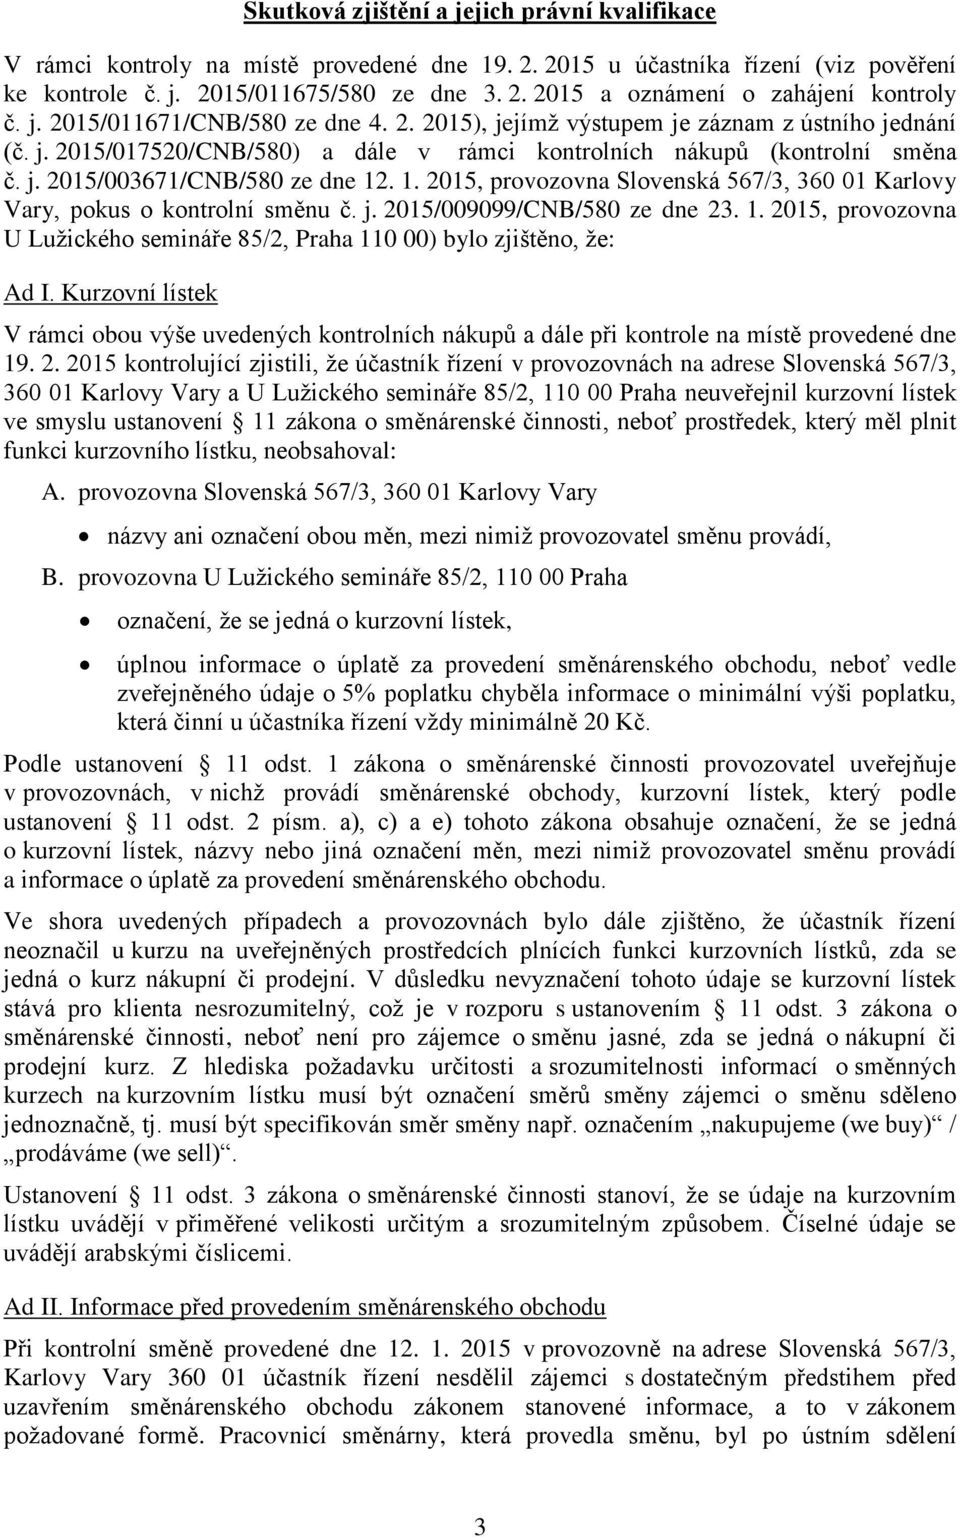 1. 2015, provozovna Slovenská 567/3, 360 01 Karlovy Vary, pokus o kontrolní směnu č. j. 2015/009099/CNB/580 ze dne 23. 1.